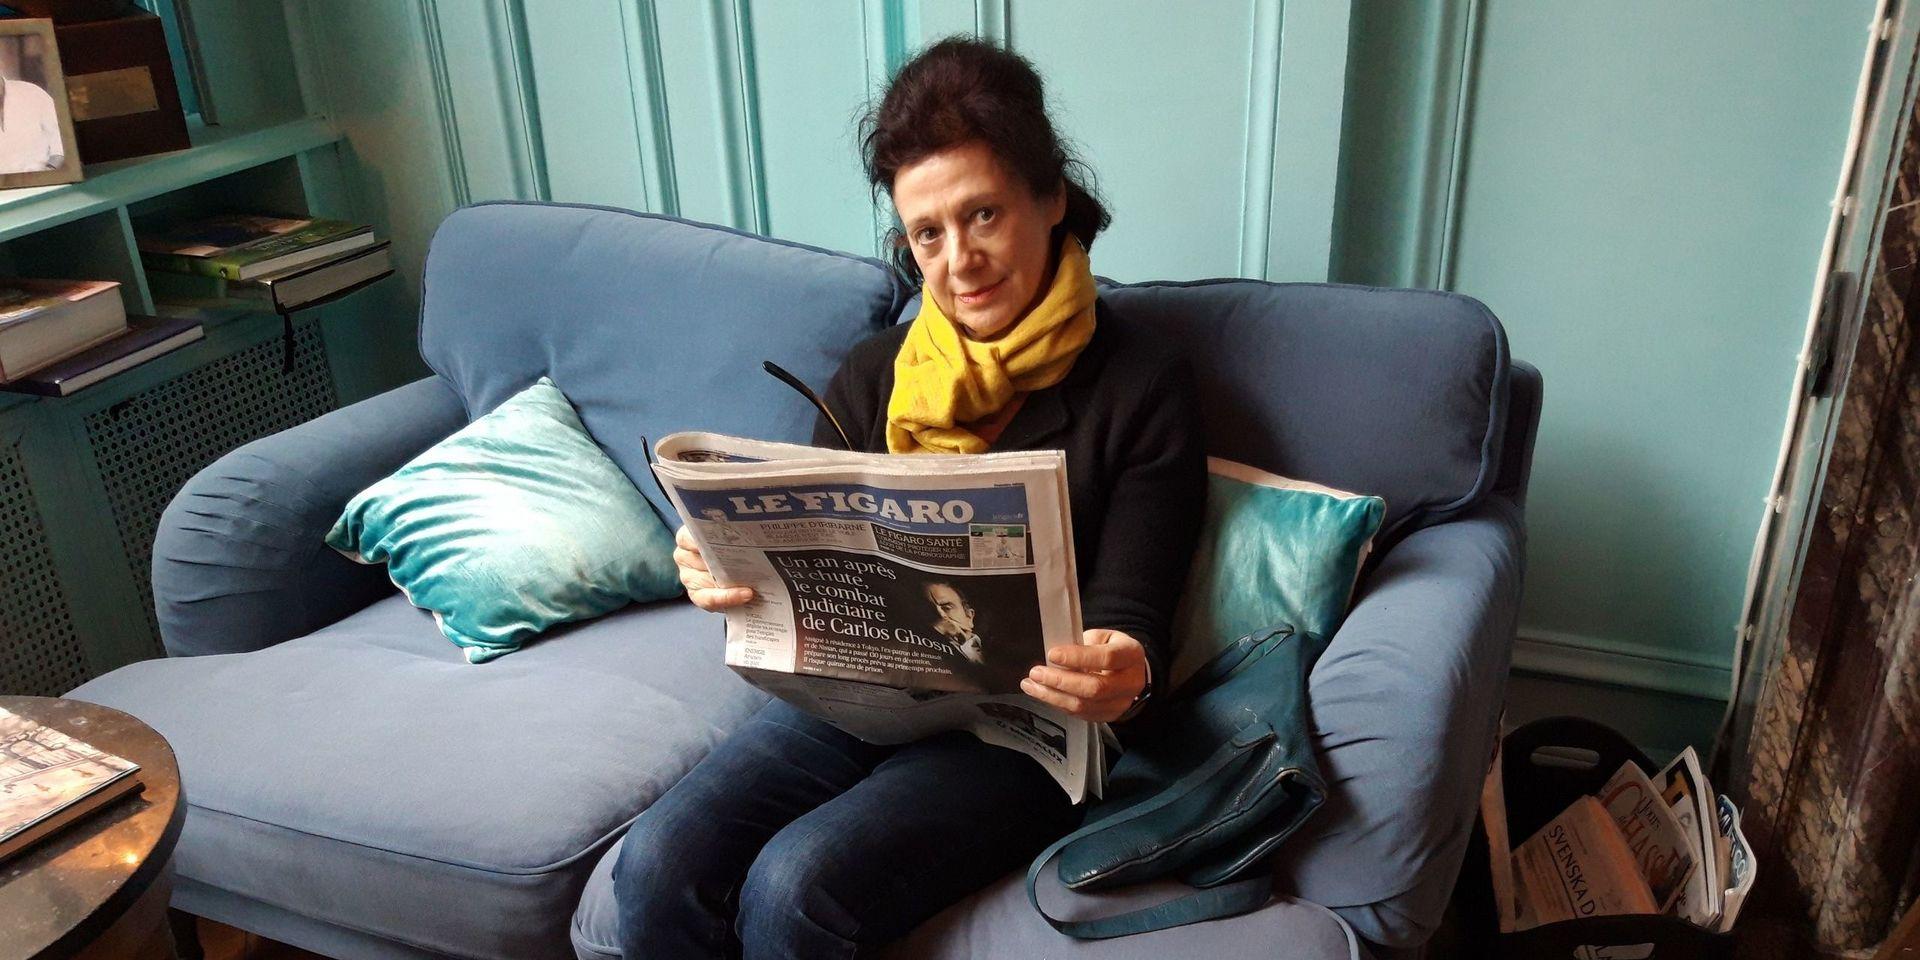 Karin med husorganet &quot;Le Figaro&quot;, en av de ledande franska morgontidningarna.